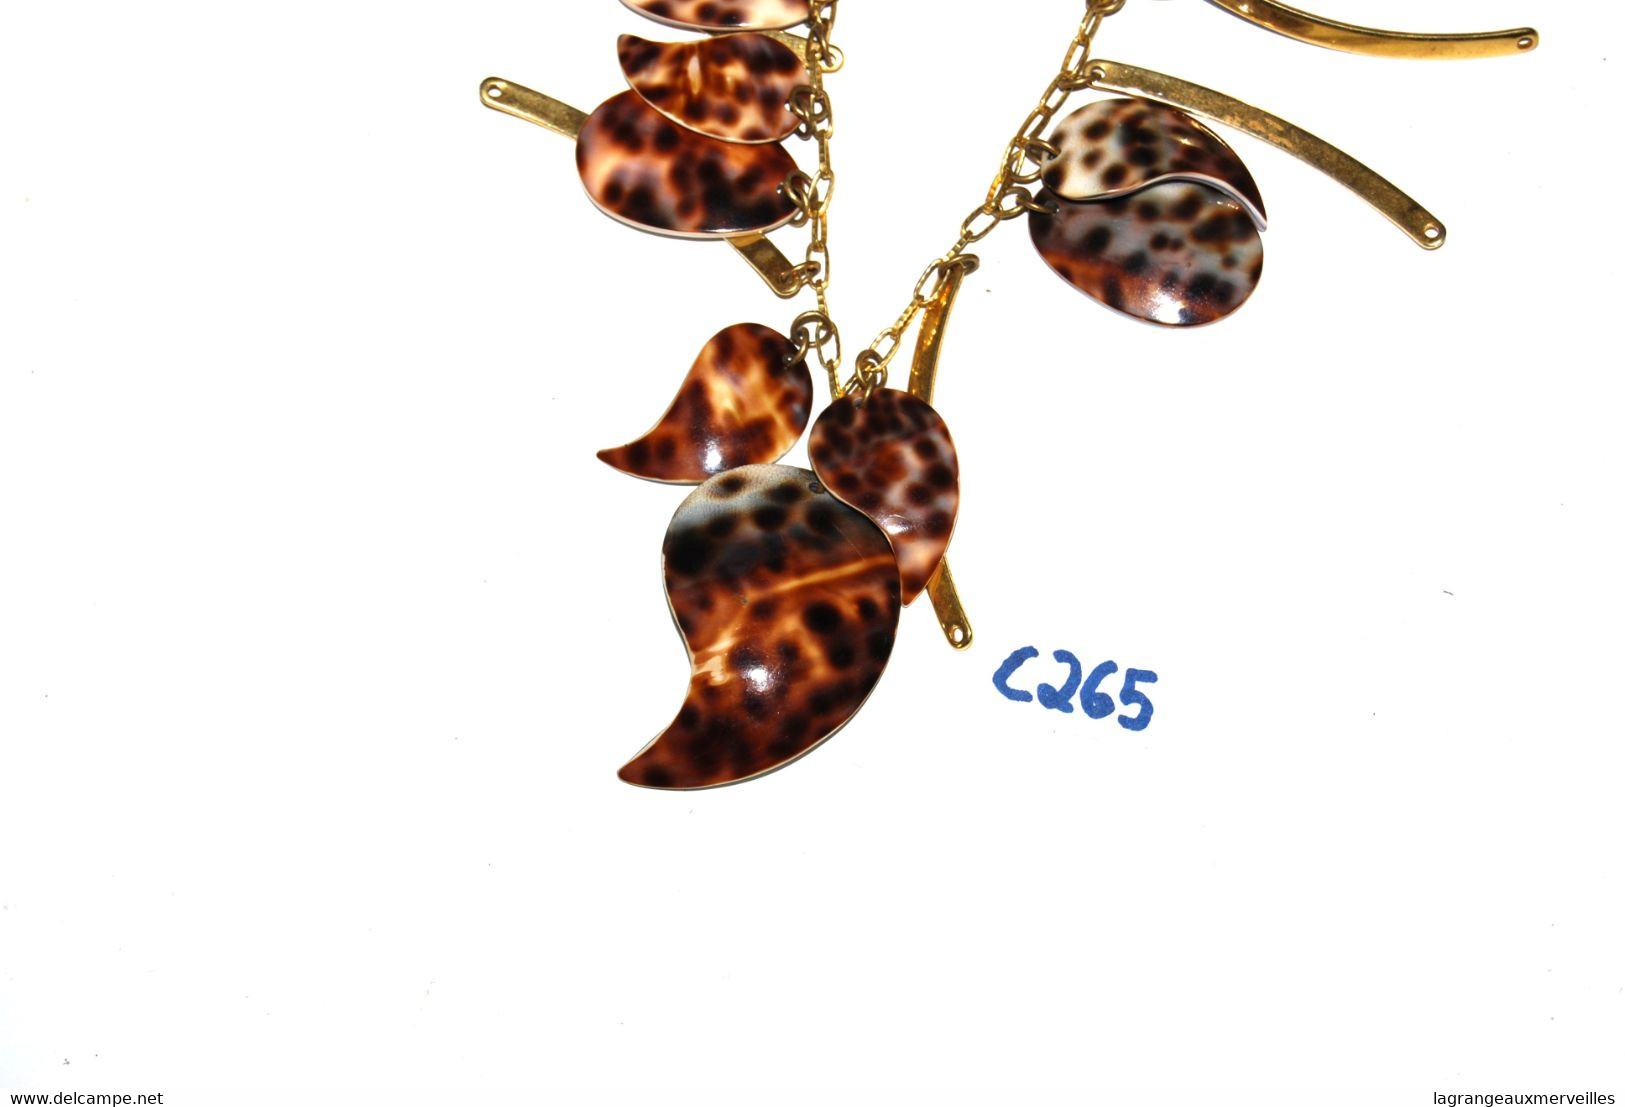 C265 Ancien Collier Moderniste - Rare Design Vintage - Collier Doré Avec Style Coquillage - Necklaces/Chains